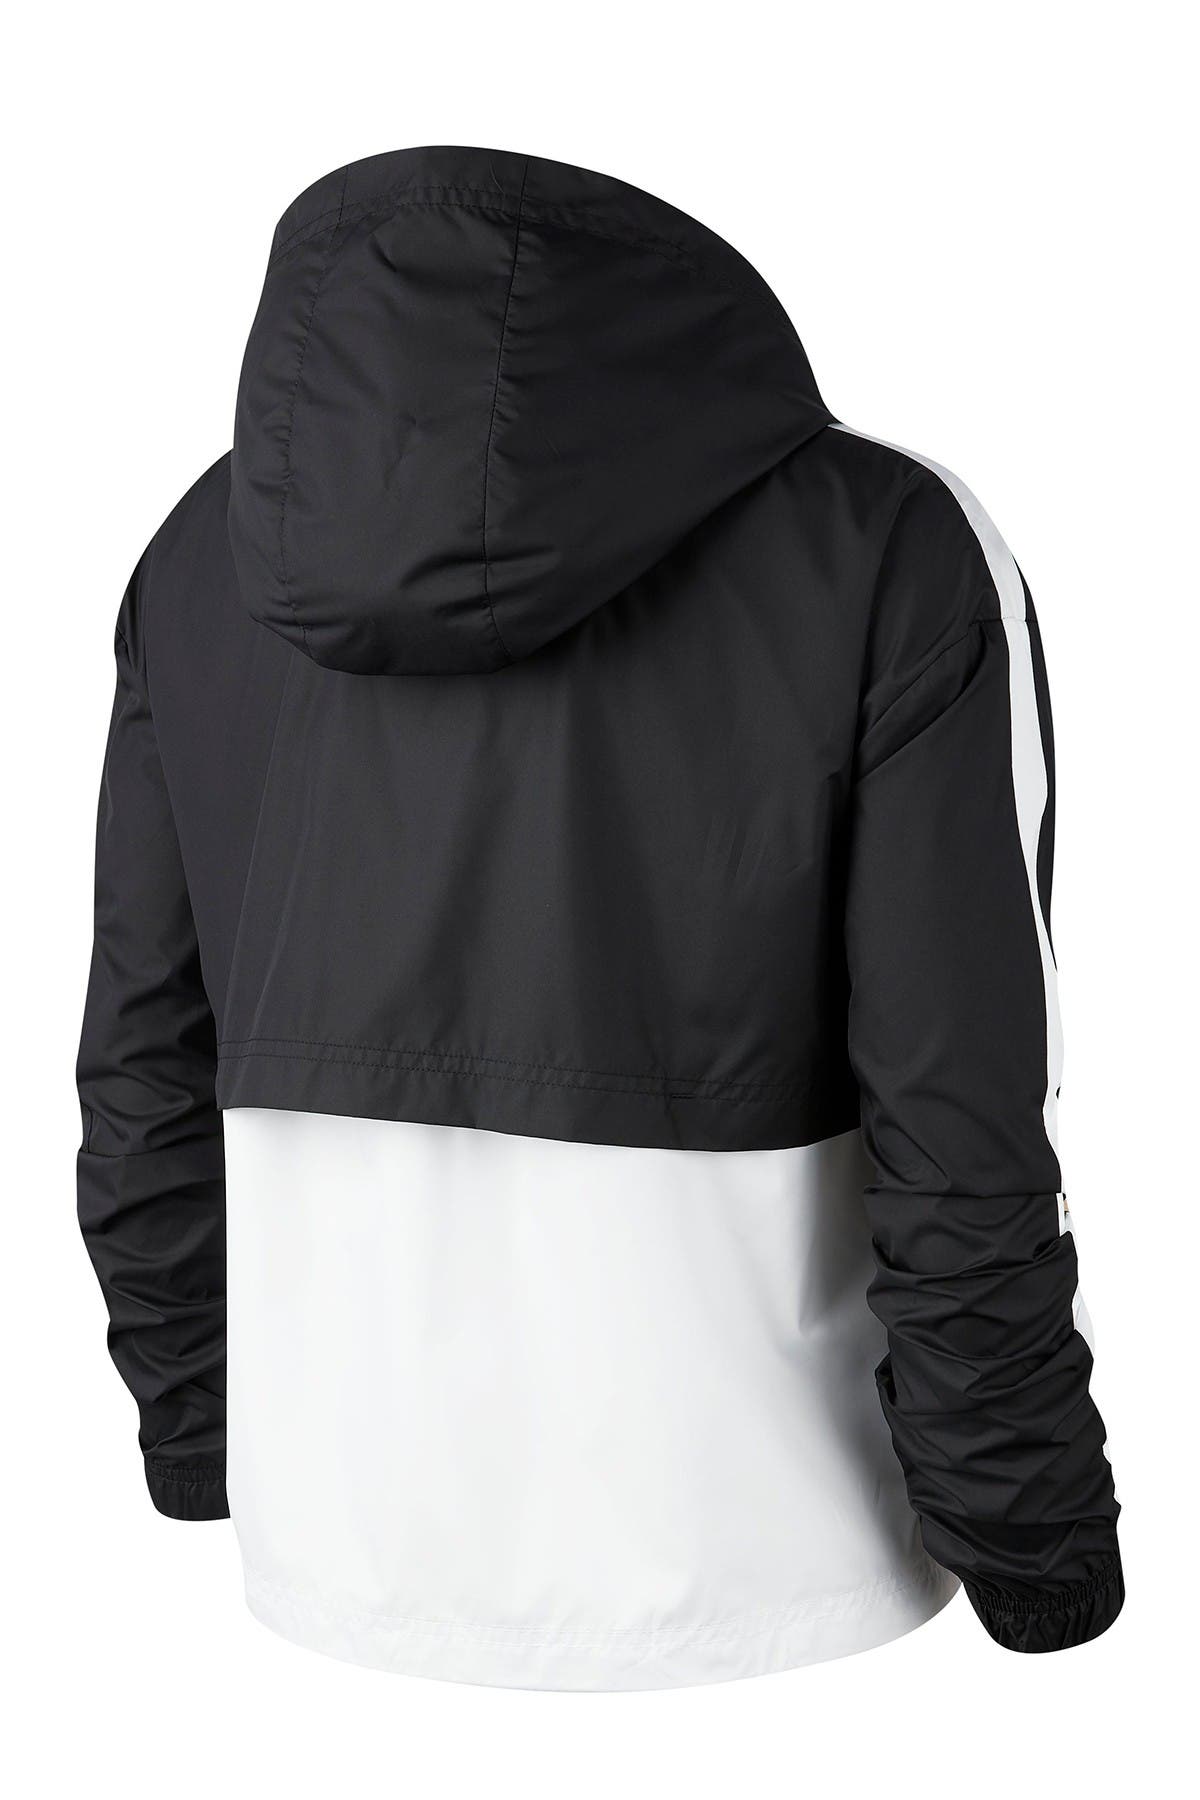 swoosh colorblock zip front hooded jacket